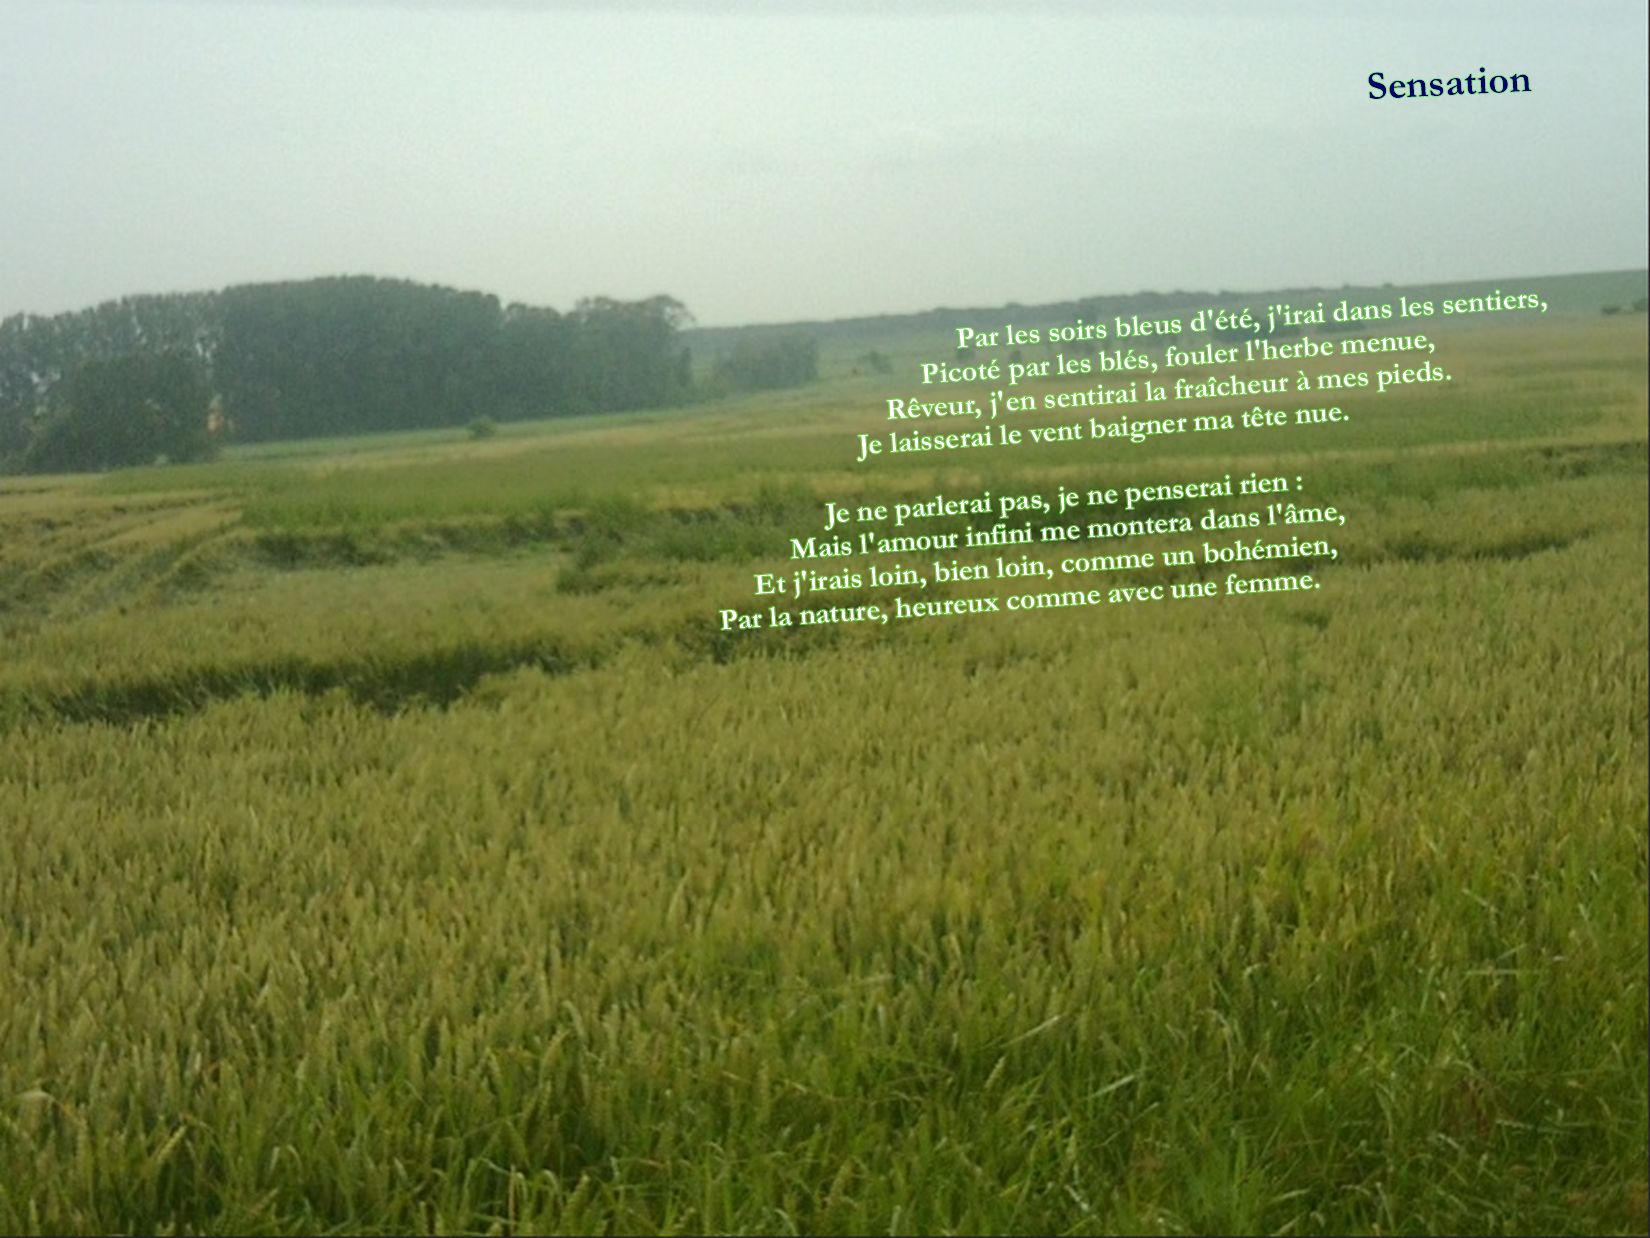 Rimbaud_Sensation (photo et poème)